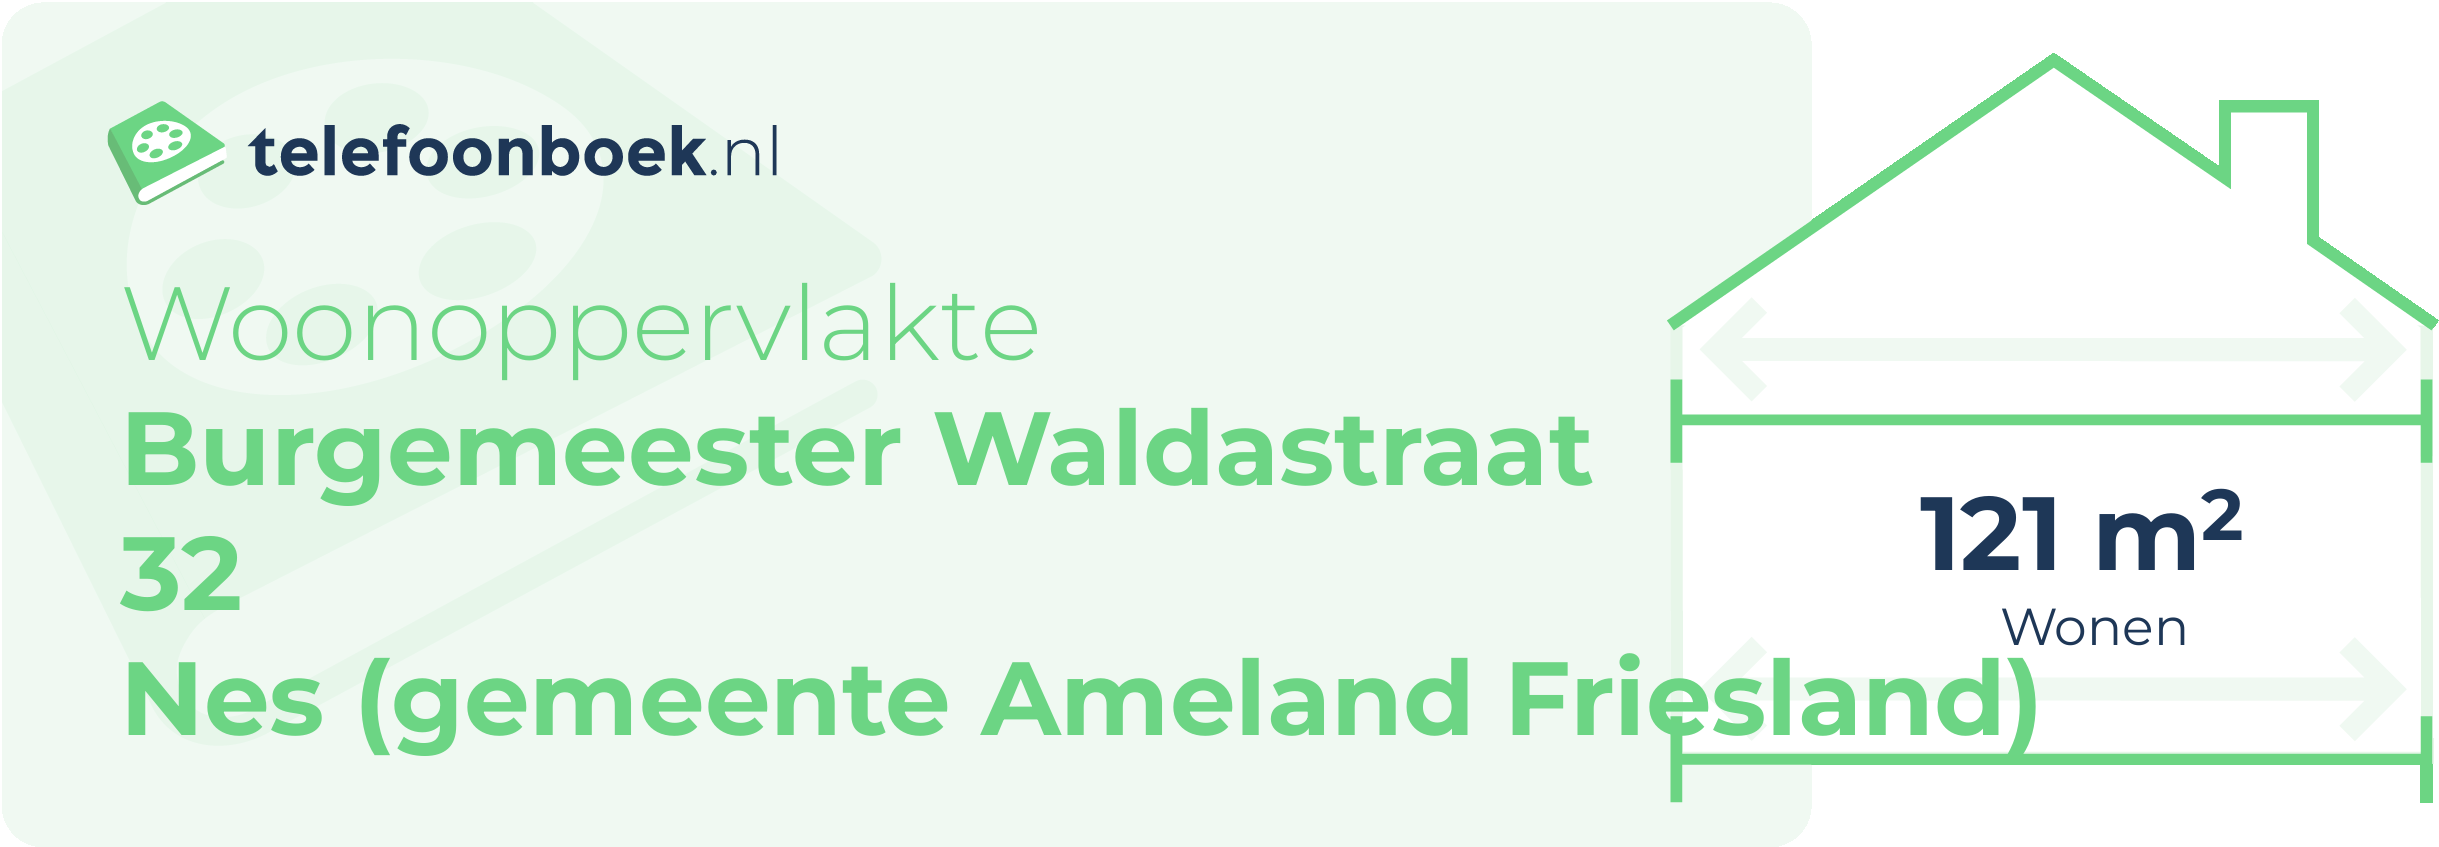 Woonoppervlakte Burgemeester Waldastraat 32 Nes (gemeente Ameland Friesland)